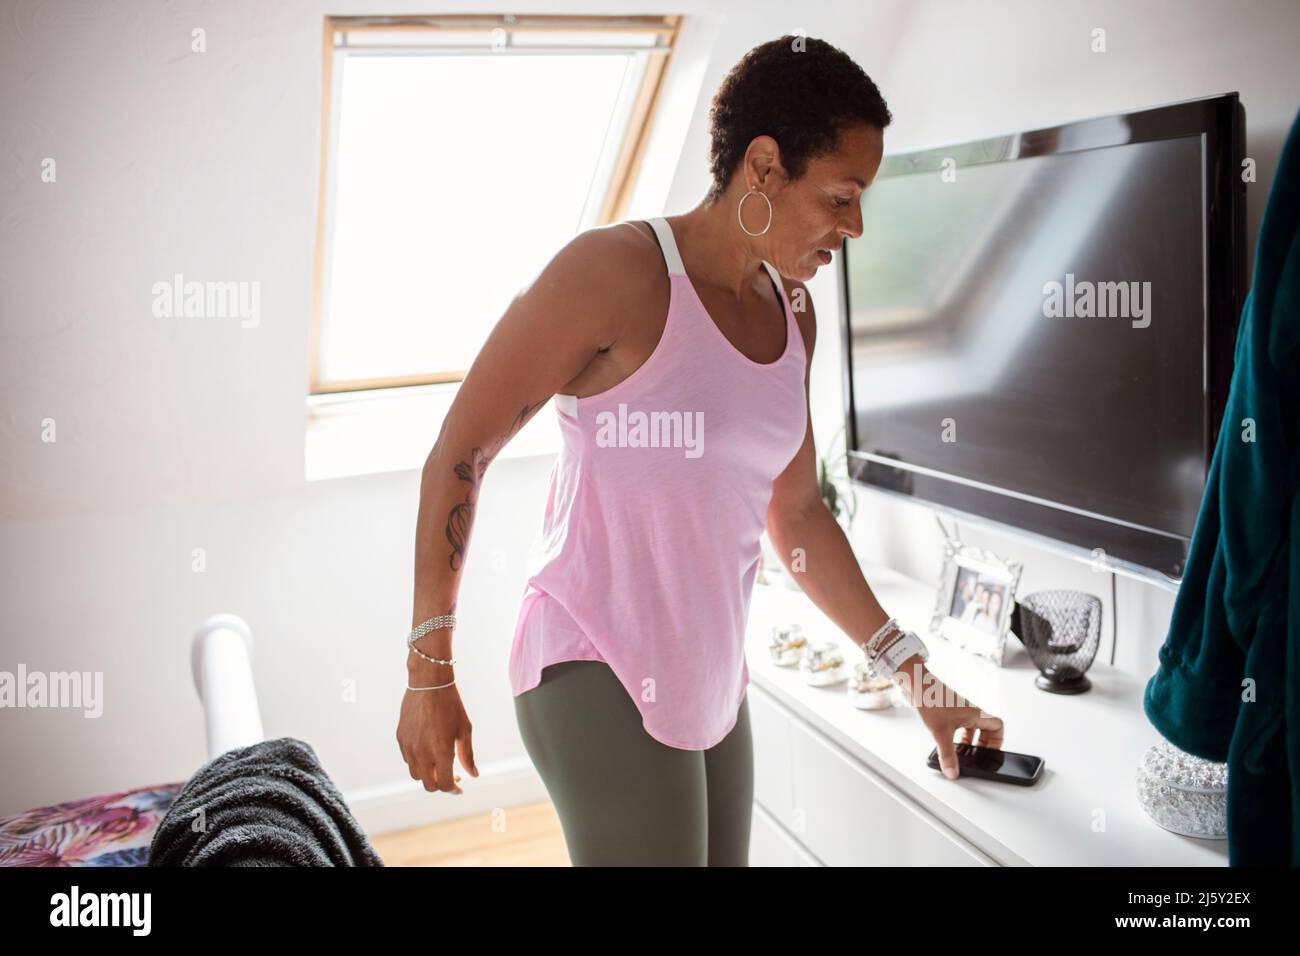 Athletische Frau, die im Schlafzimmer nach einem Smartphone greift Stockfoto